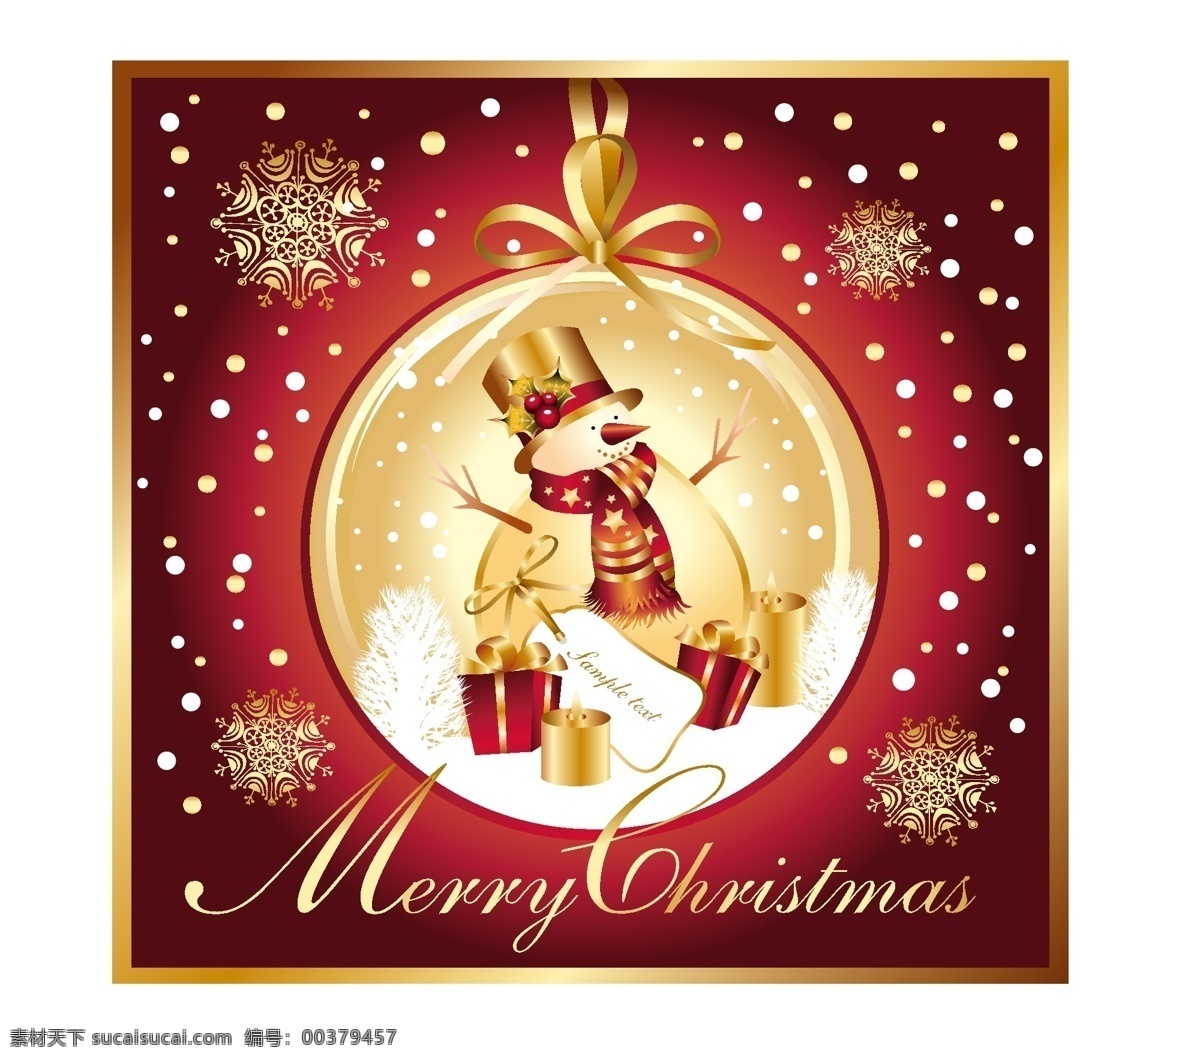 里面 摆设 装饰 圣诞 雪人 背景壁纸 庆典和聚会 圣诞节 节日和季节性 装饰装潢 模板和模型